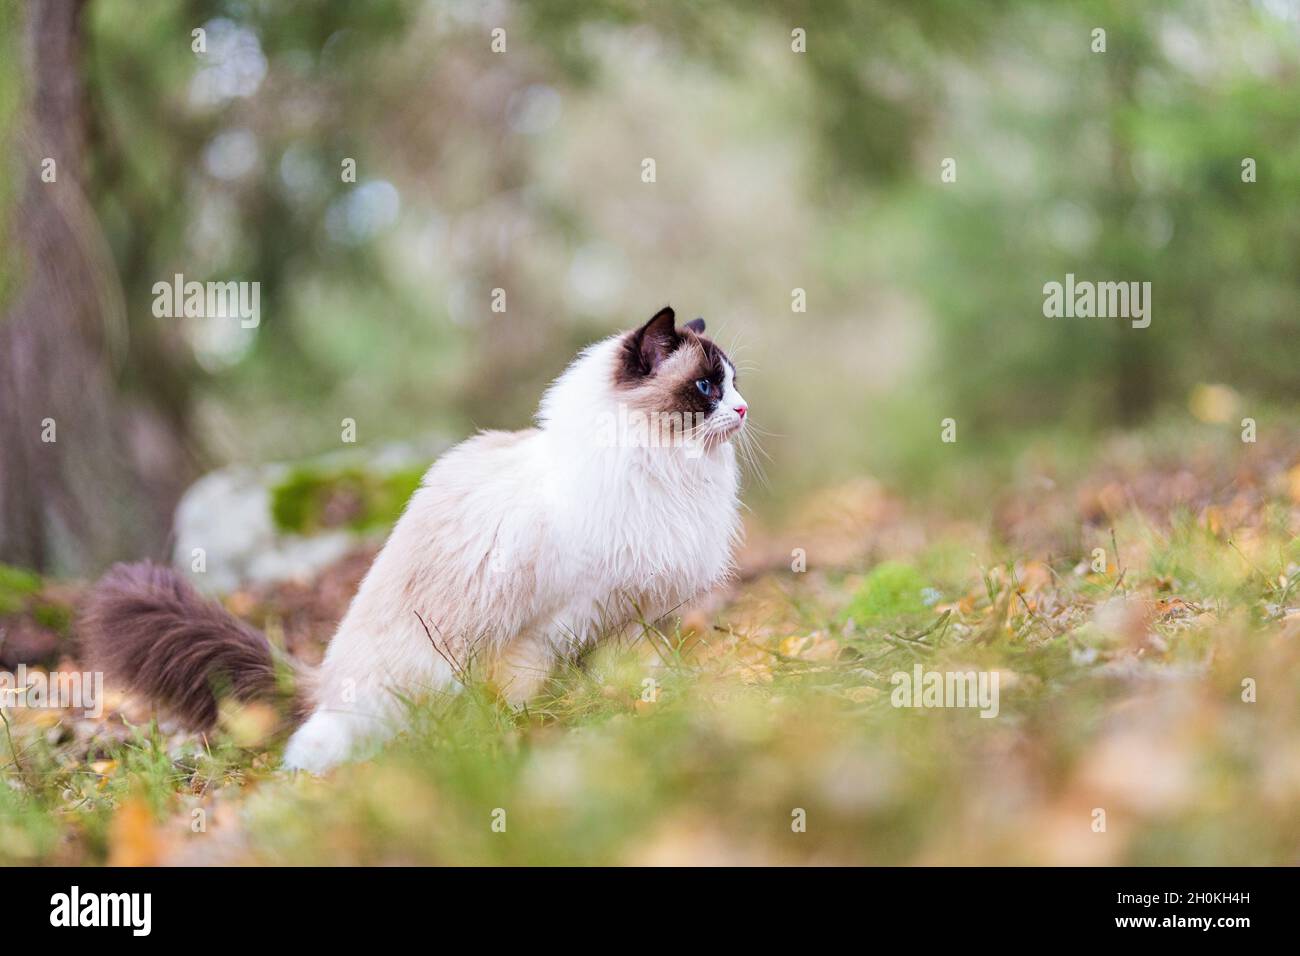 Un grazioso Ragdoll purebred gatto marrone bicolore fuori nella foresta. Il gatto è visto in vista di profilo, e lei sta guardando fuori nel bosco. Foto Stock